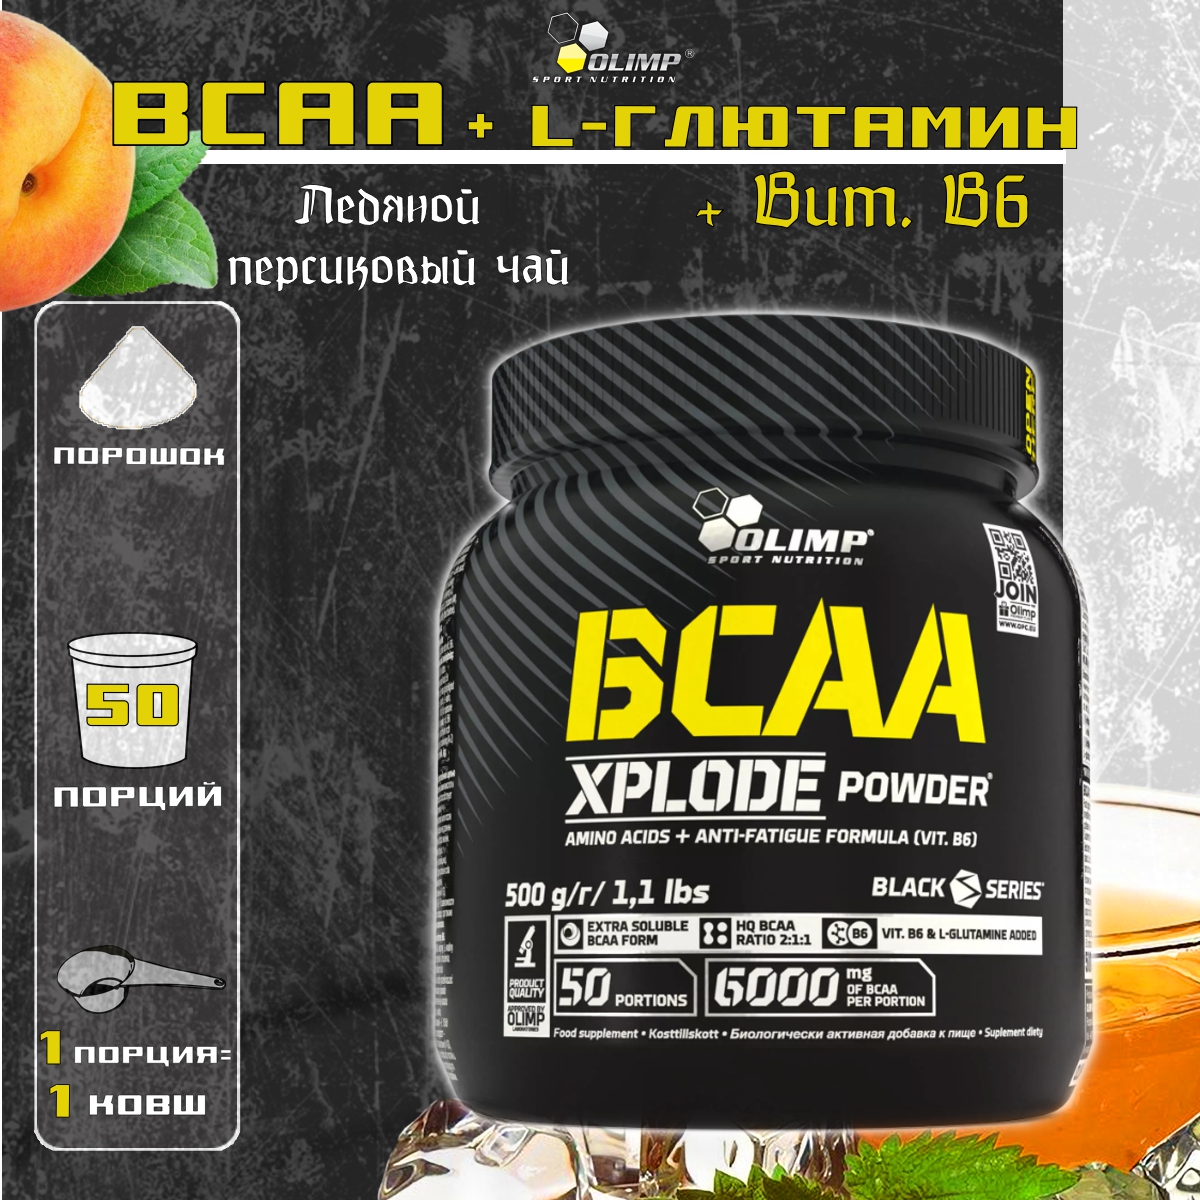 BCAA Olimp BCAA Xplode Powder 500 грамм Ледяной персиковый чай